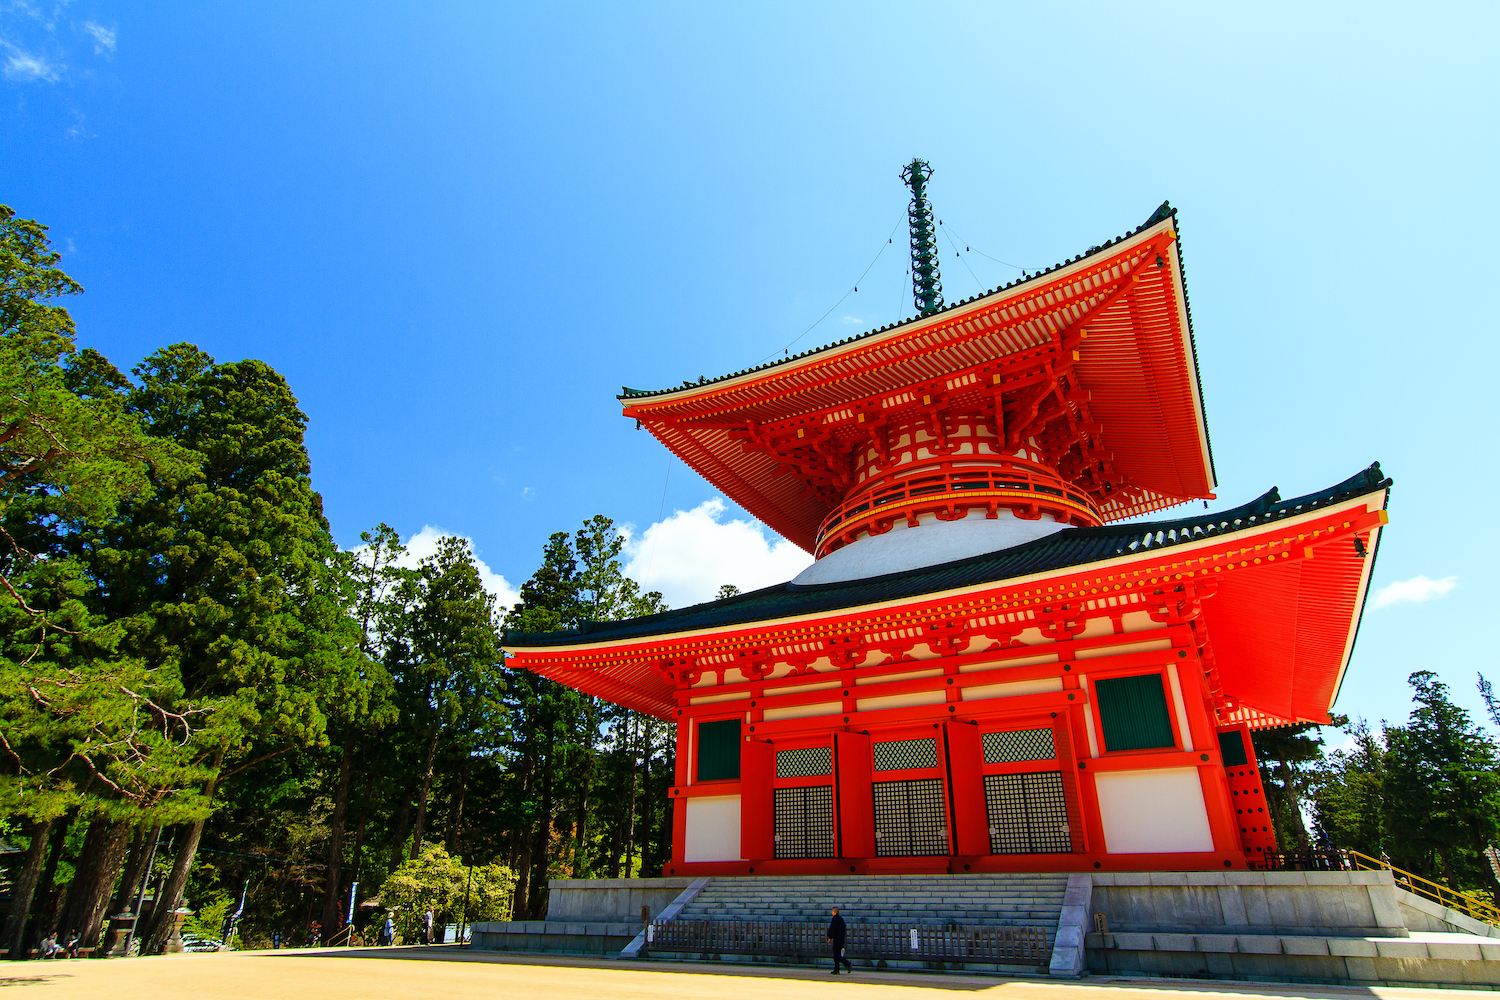 Konpon Daito Pagoda at Danjo Garan Temple, Mount Koya, Wakayama, Japan